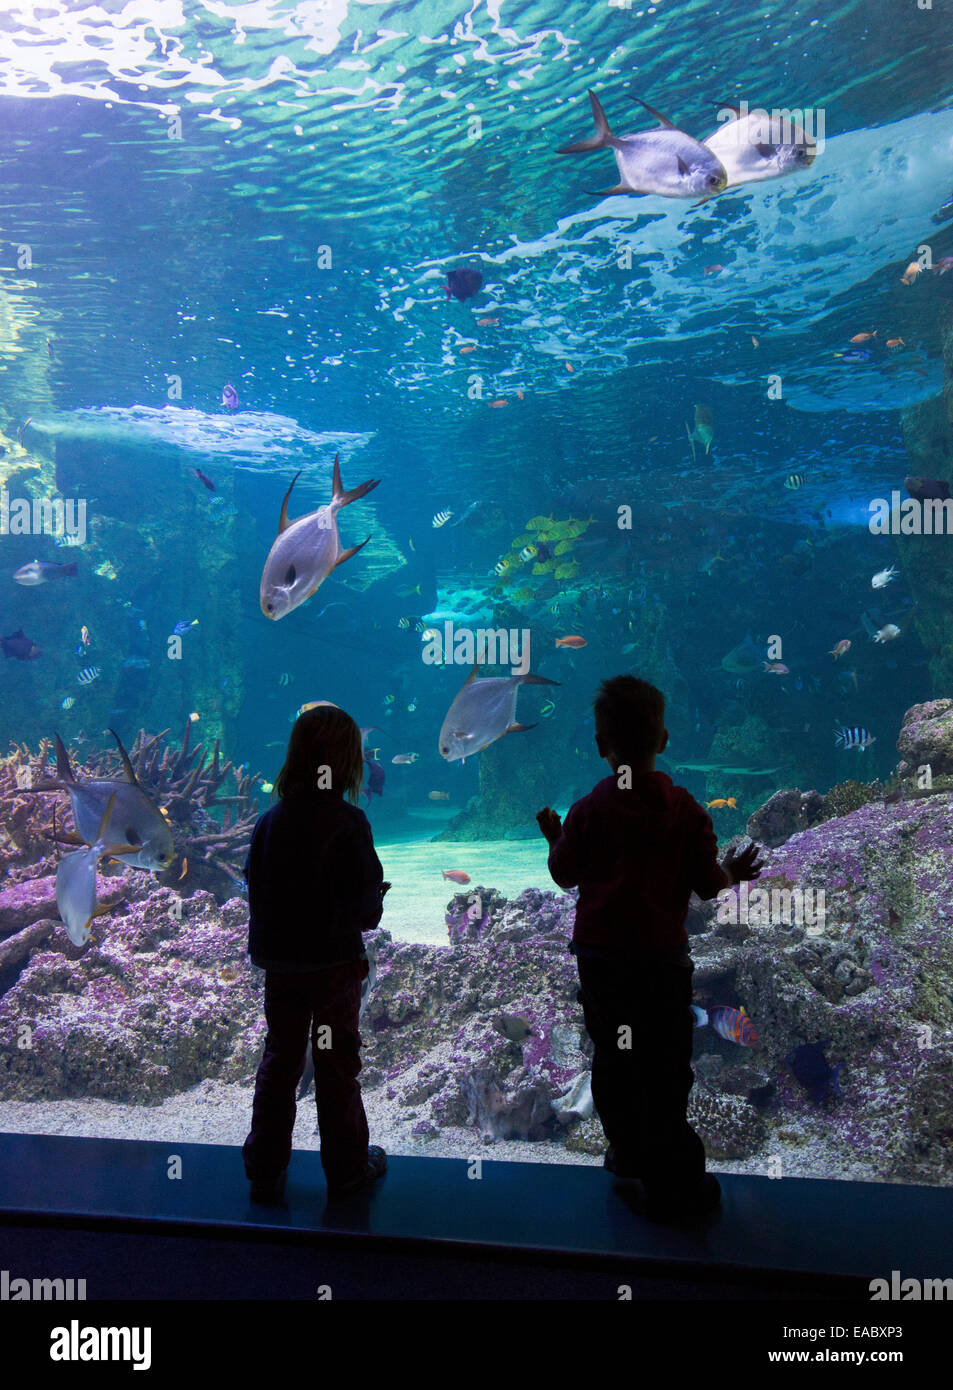 Silueta de niños mirando la Gran Barrera de Coral en el acuario Sea Life Aquarium de Sydney, Darling Harbour, Sydney Foto de stock